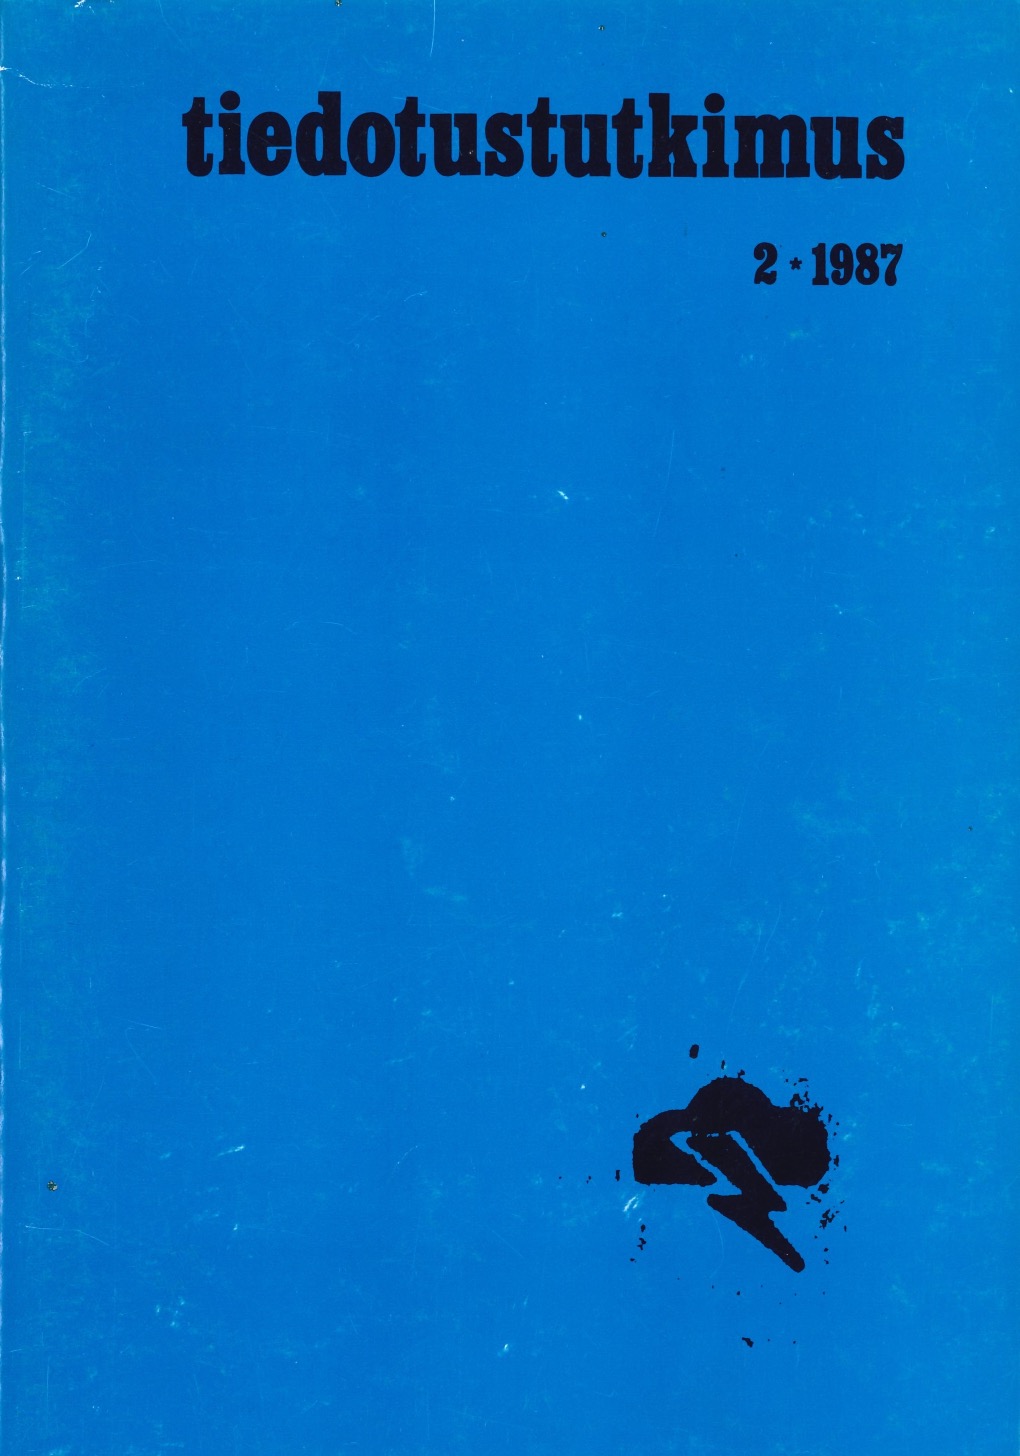 					Näytä Vol 10 Nro 2 (1987)
				